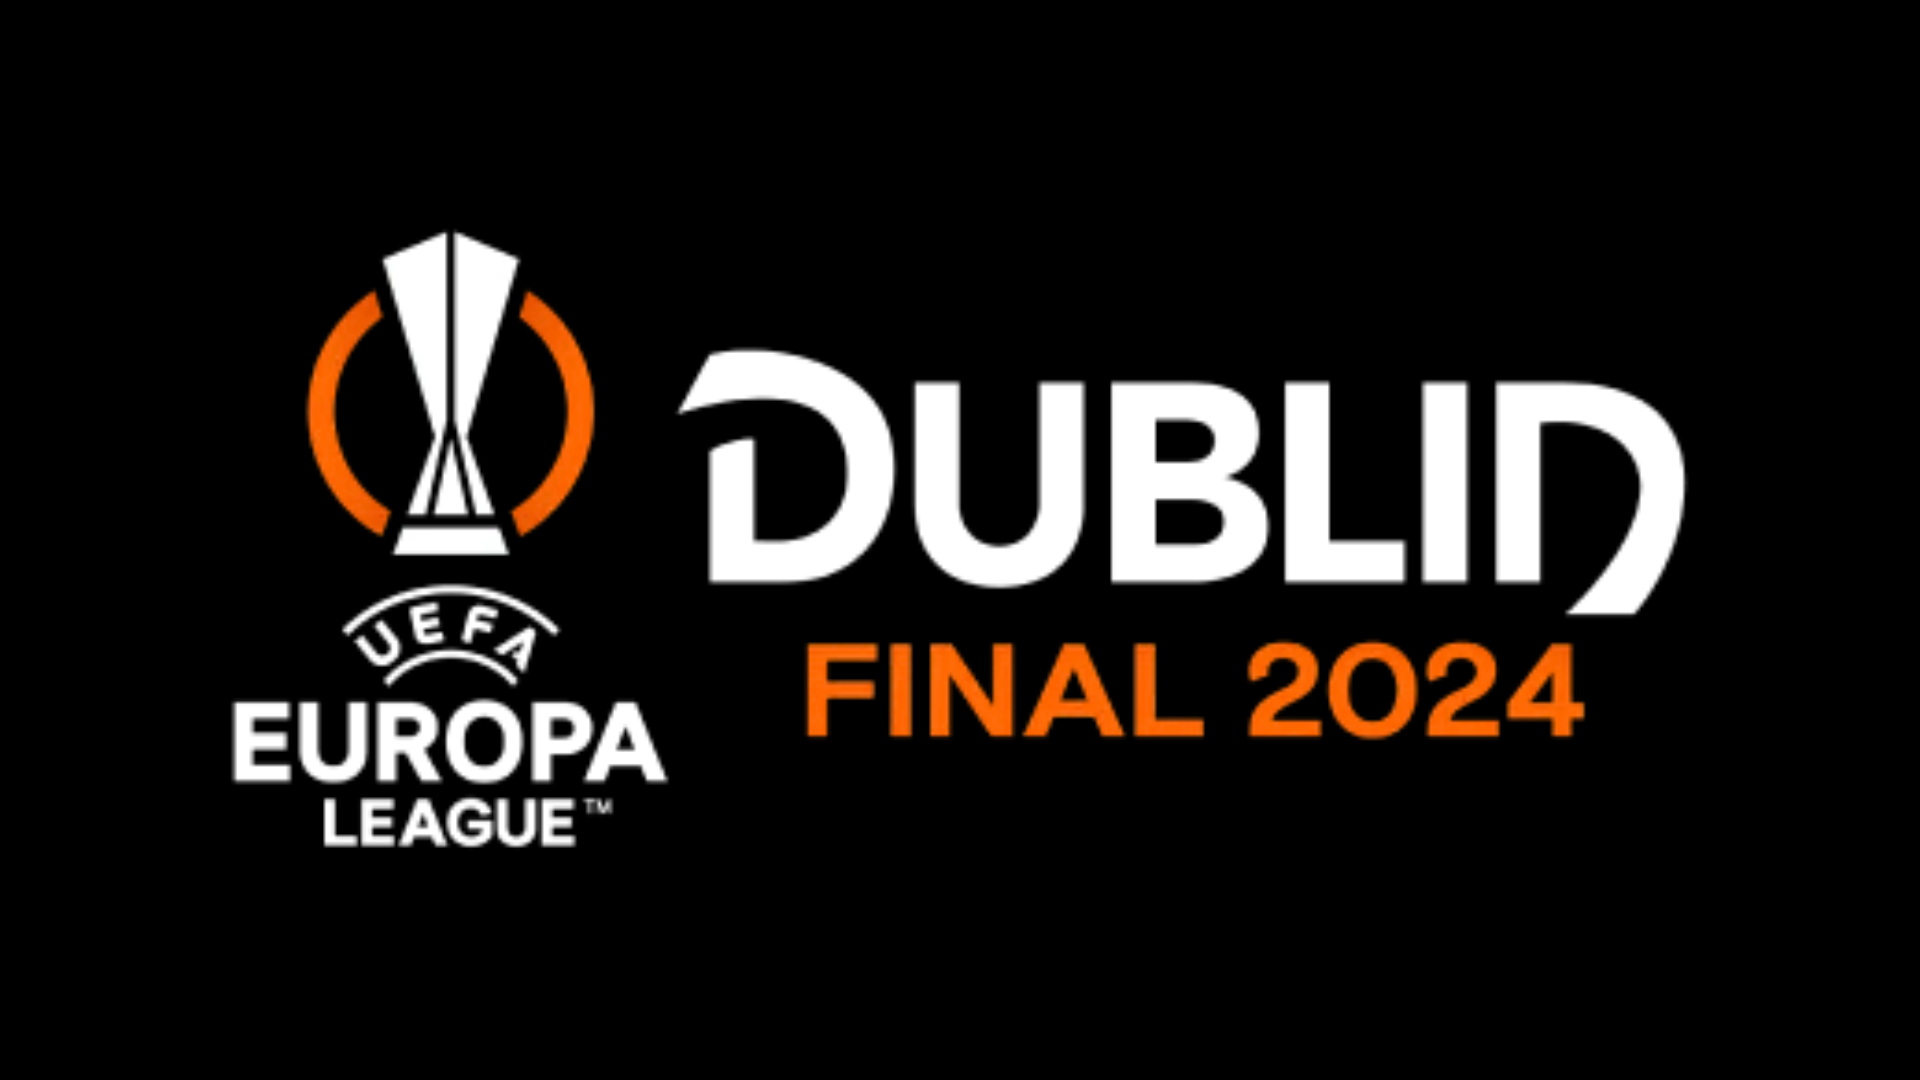 Europa League Final 2024